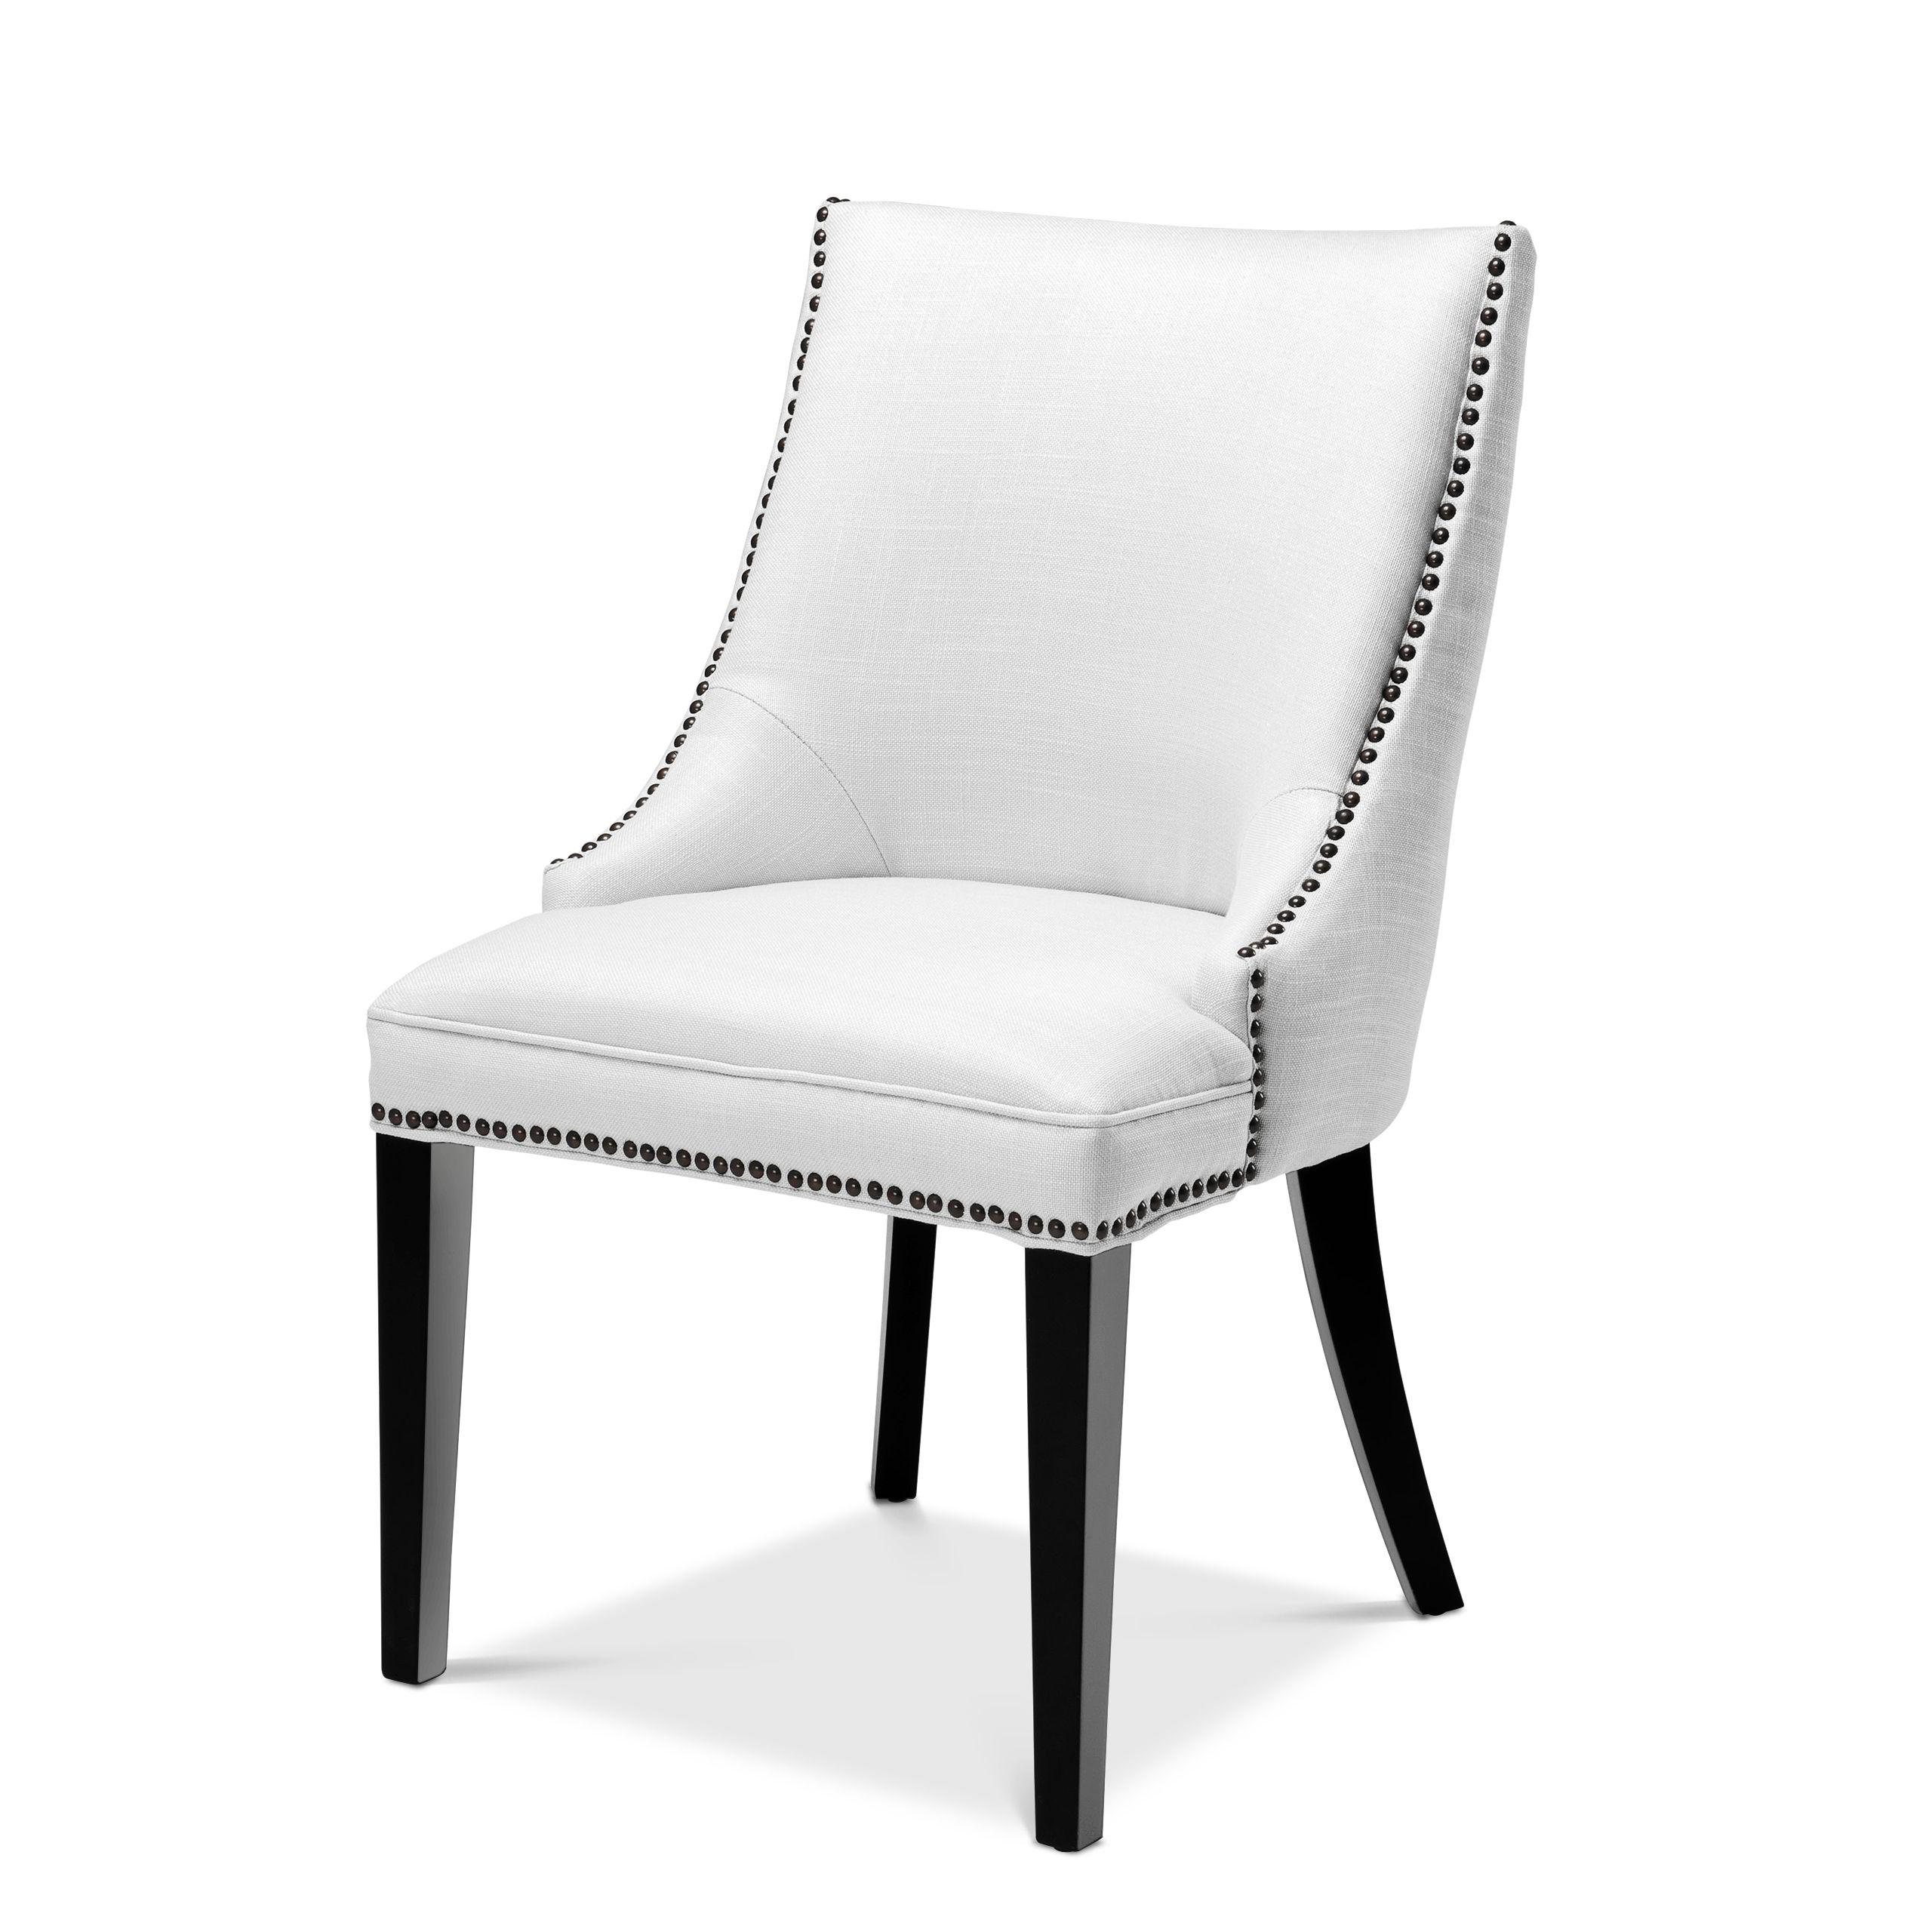 Купить Стул без подлокотника Dining Chair Bermuda в интернет-магазине roooms.ru